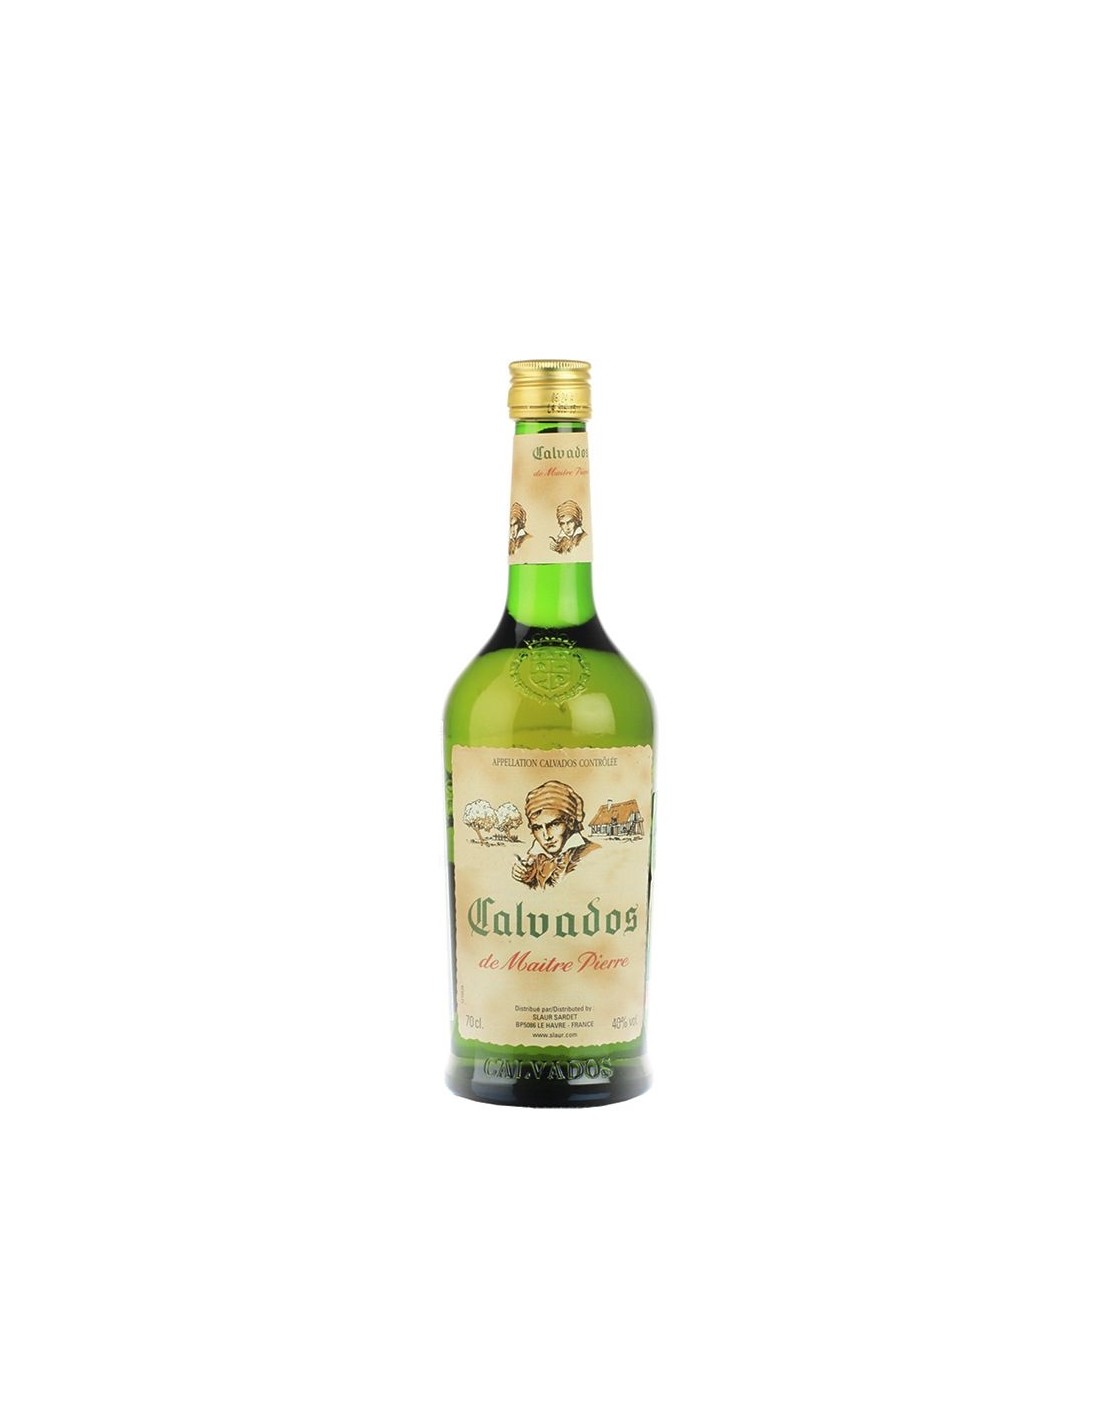 Brandy Calvados de Maitre Pierre, 40% alc., 0.7L, Franta alcooldiscount.ro